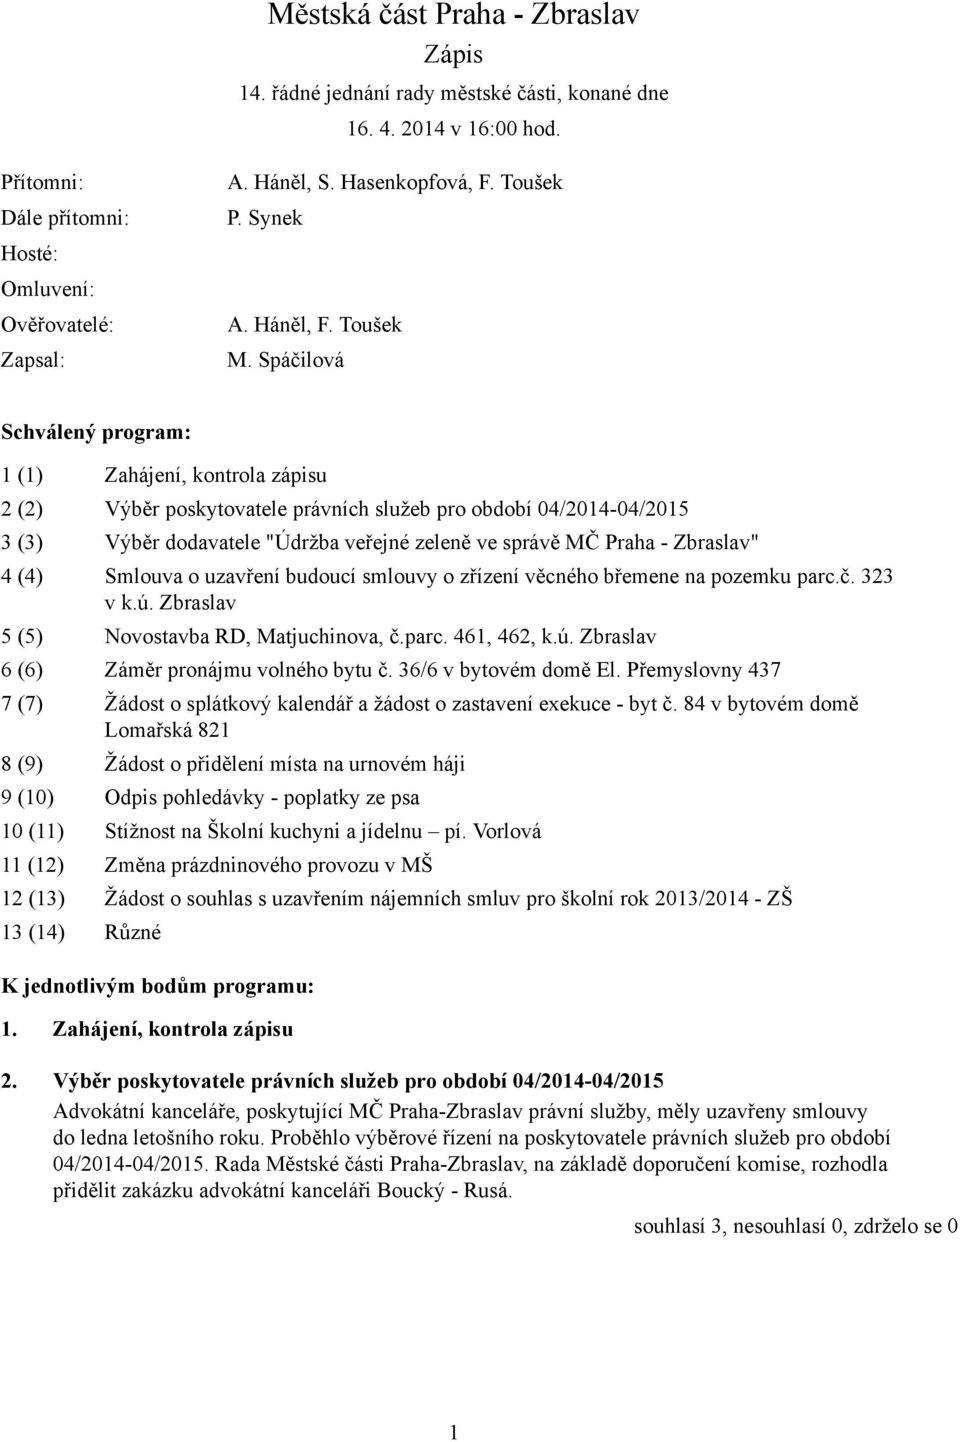 Spáčilová Schválený program: 1 (1) Zahájení, kontrola zápisu 2 (2) Výběr poskytovatele právních služeb pro období 04/2014-04/2015 3 (3) Výběr dodavatele "Údržba veřejné zeleně ve správě MČ Praha -